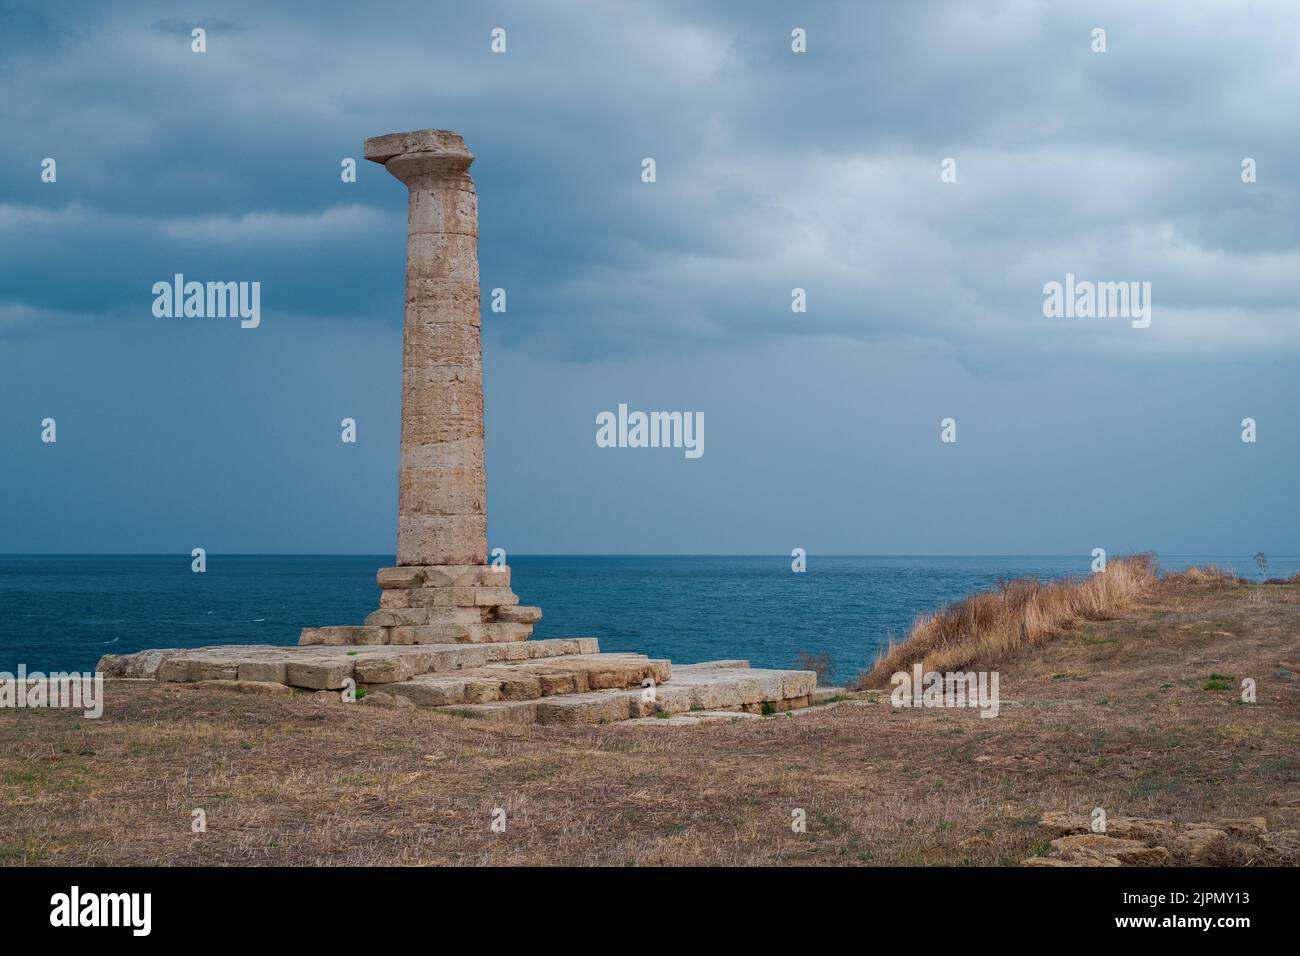 L'antica colonna dorica di Capo colonna in una giornata nuvolosa. Provincia di Crotone, Calabria, Italia. Foto Stock